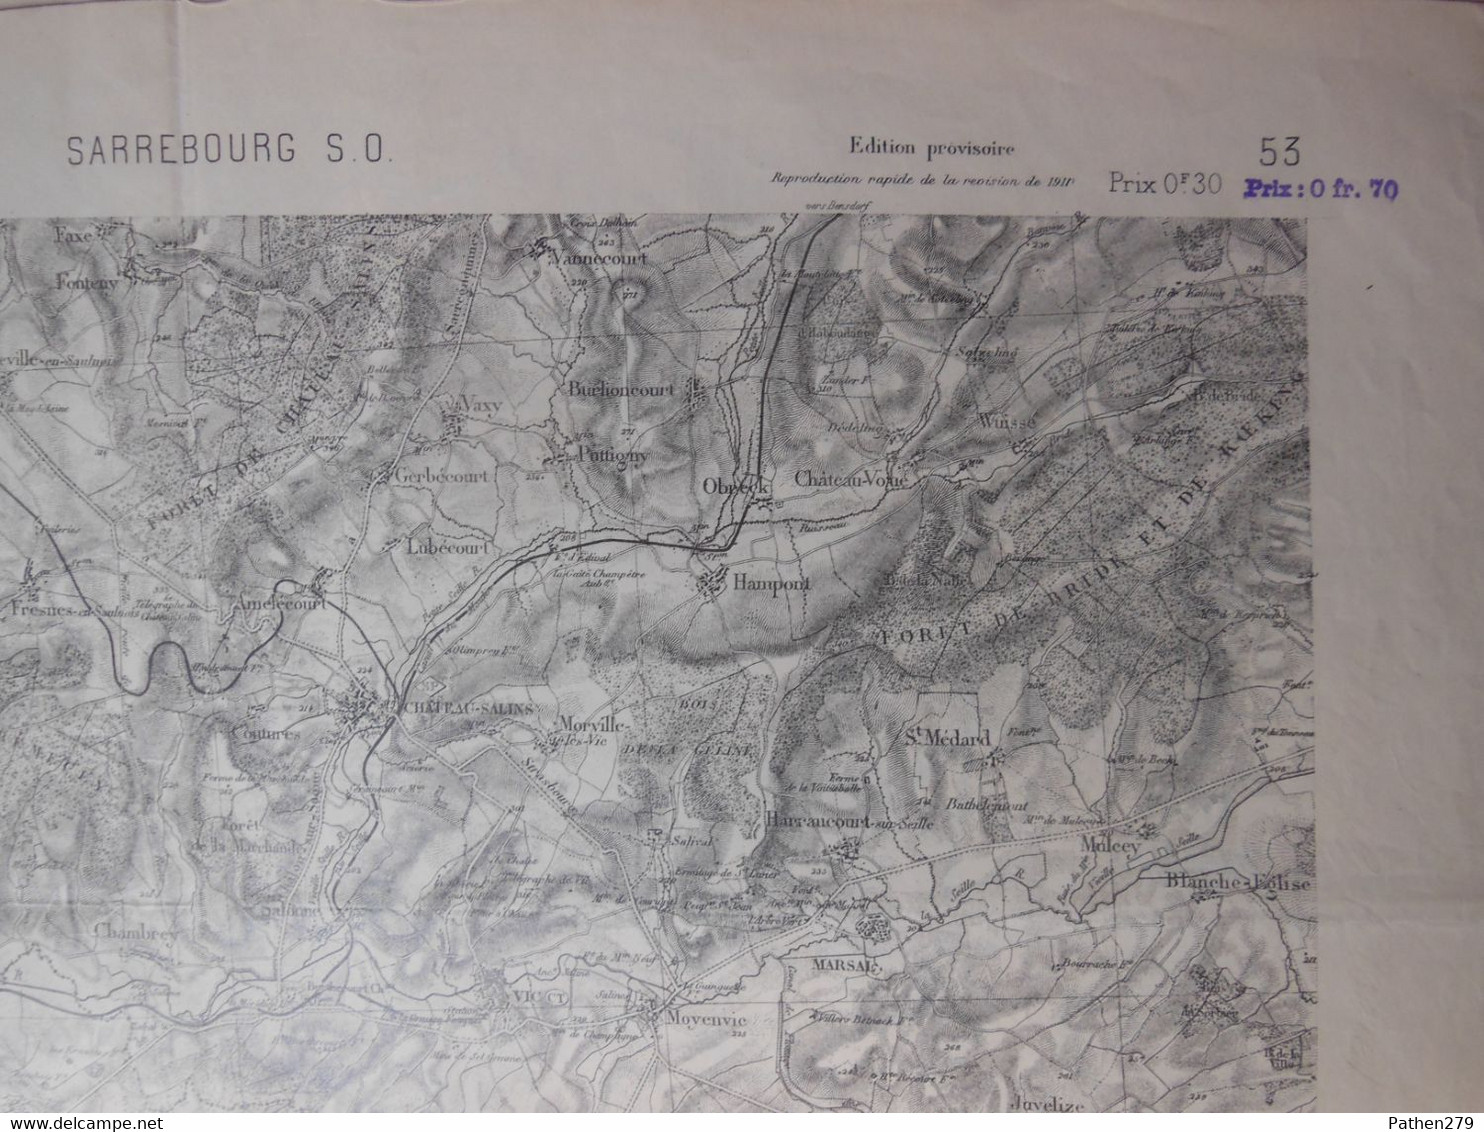 Carte Géographique CHATEAU-SALINS - VIC (57 - Moselle) établie En 1835 Révisée 1911 - Cartes Géographiques